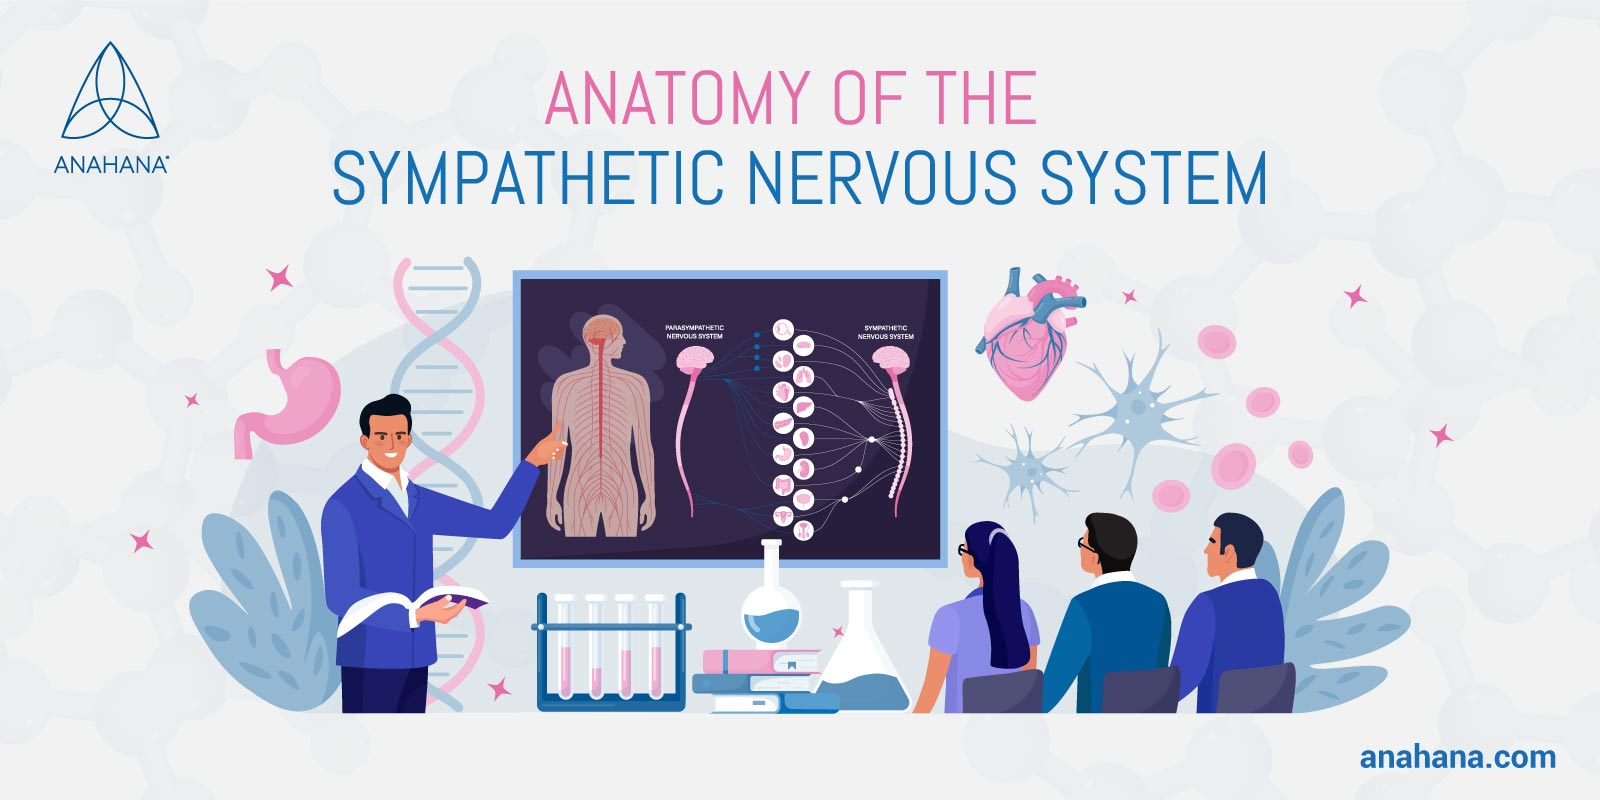 Anatomie du système nerveux sympathique